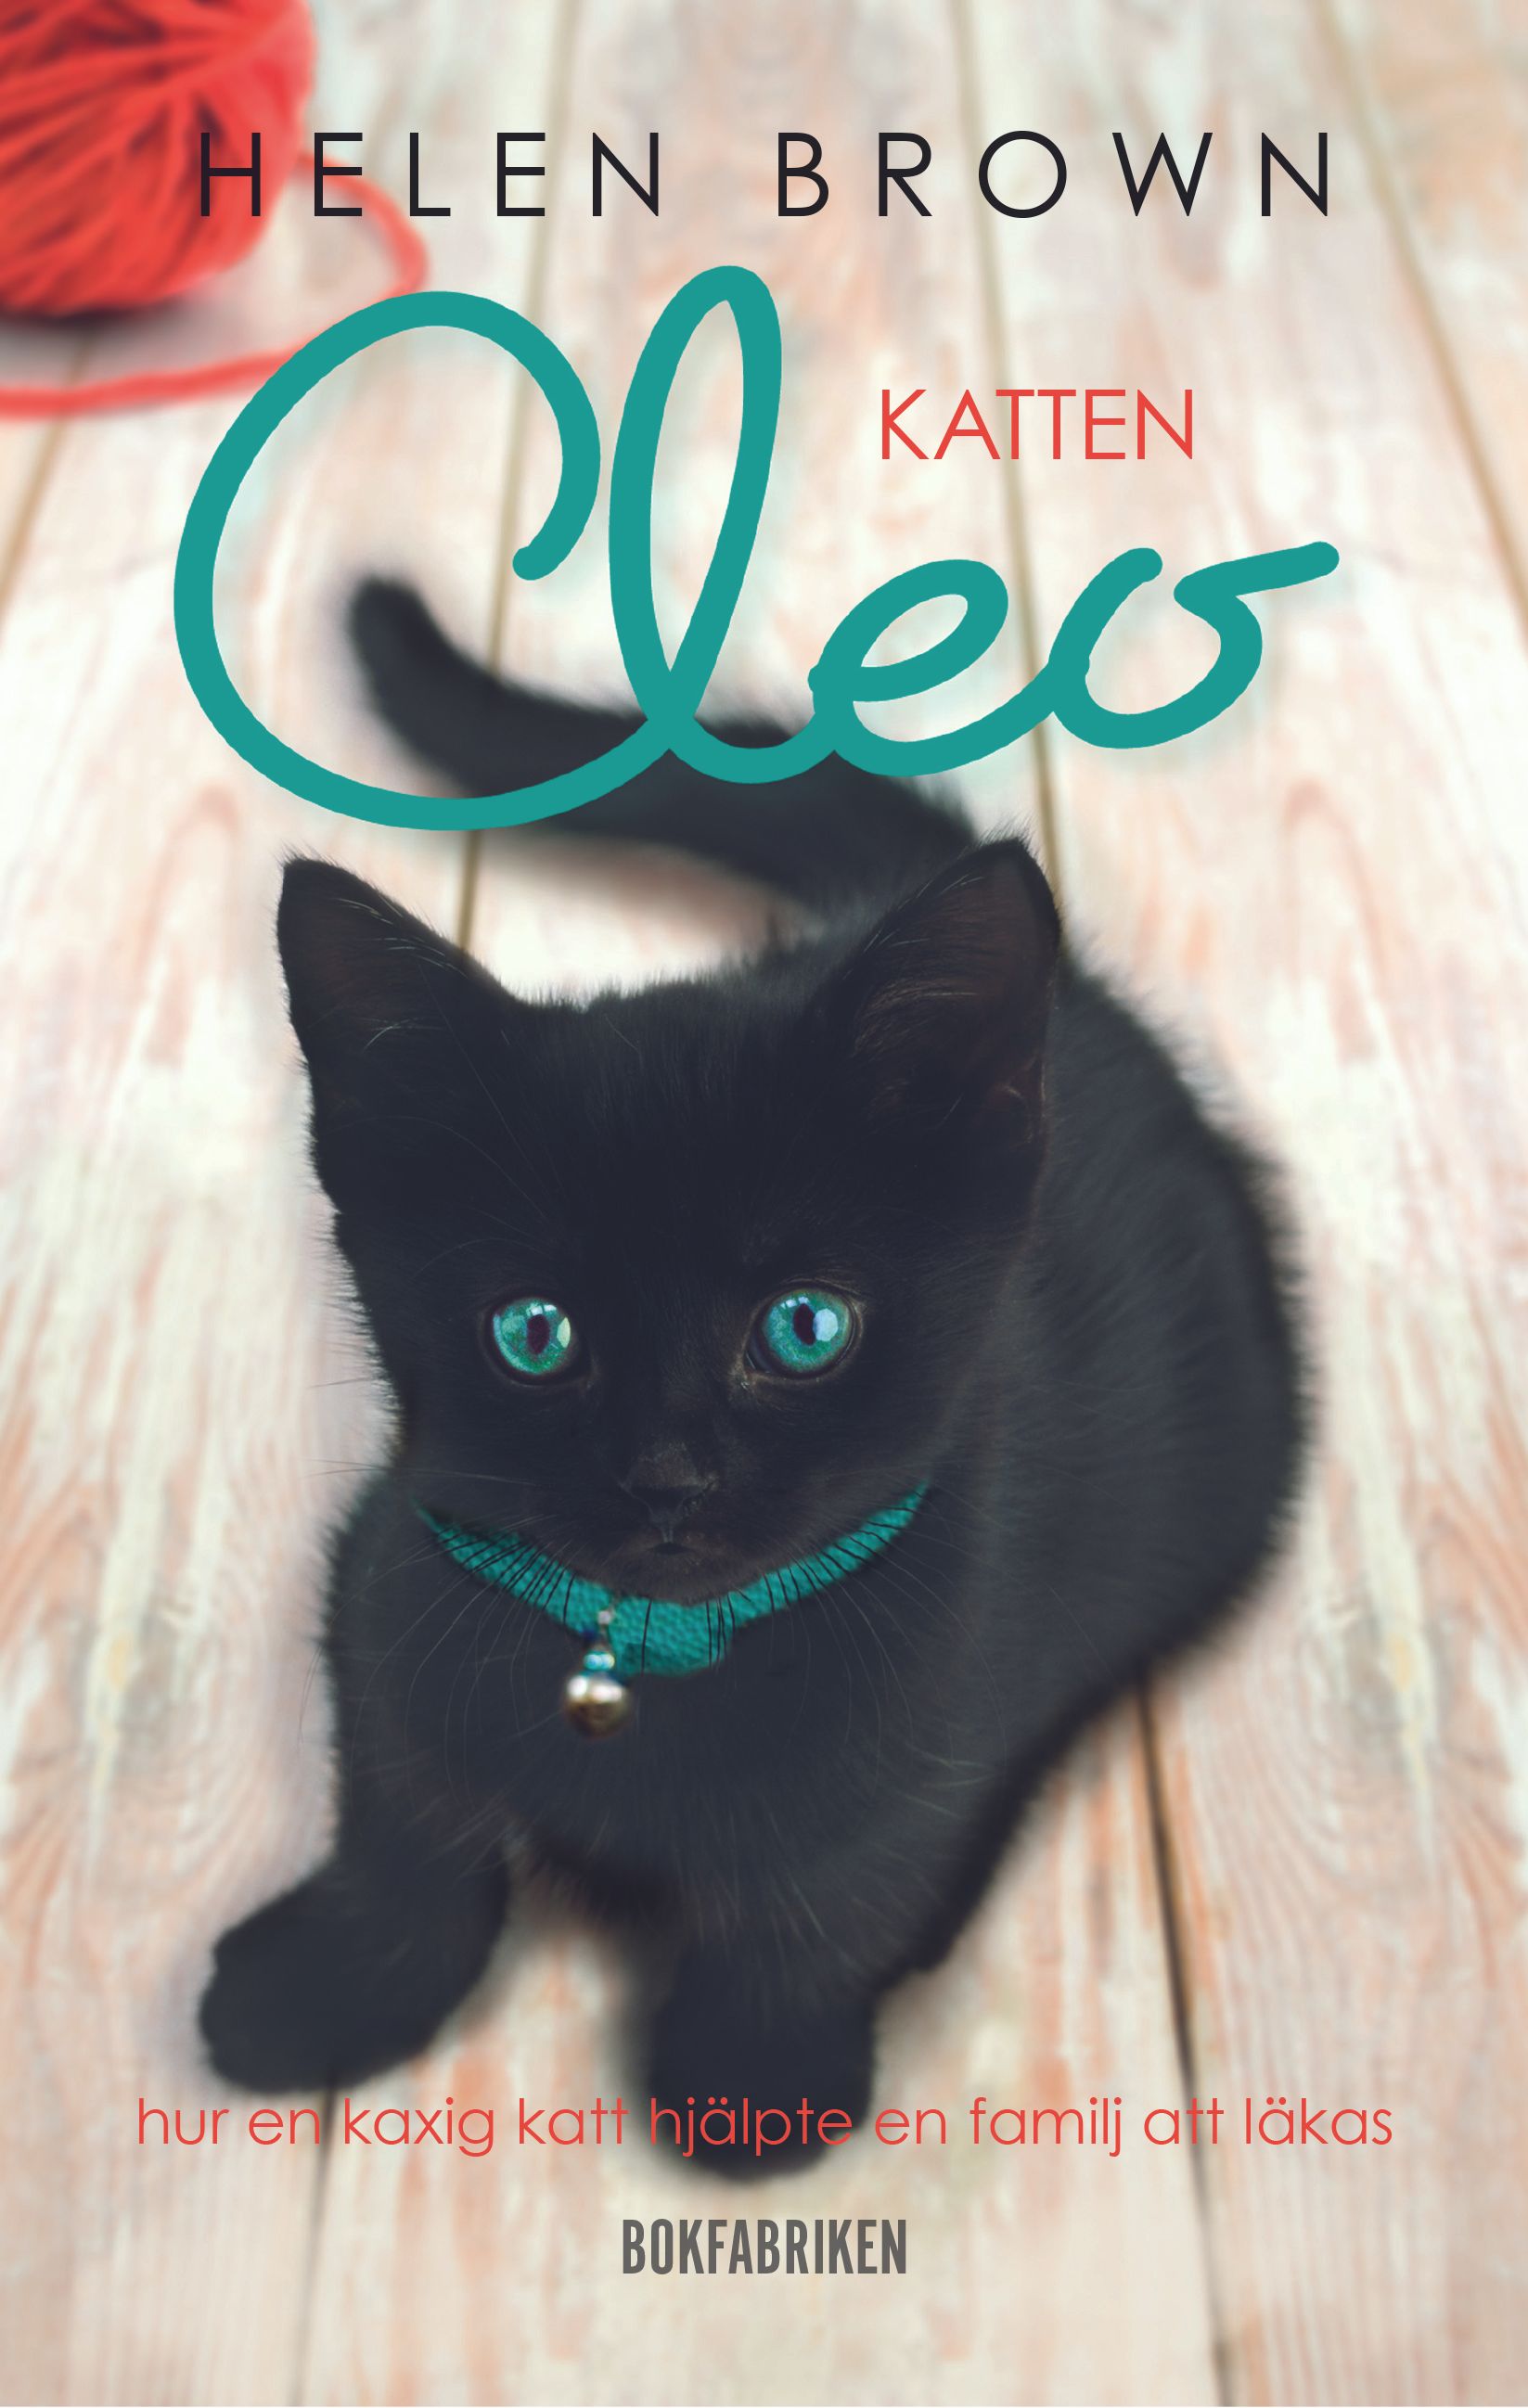 Katten Cleo - Hur en kaxig katt hjälpte en familj att läkas, e-bog af Helen Brown